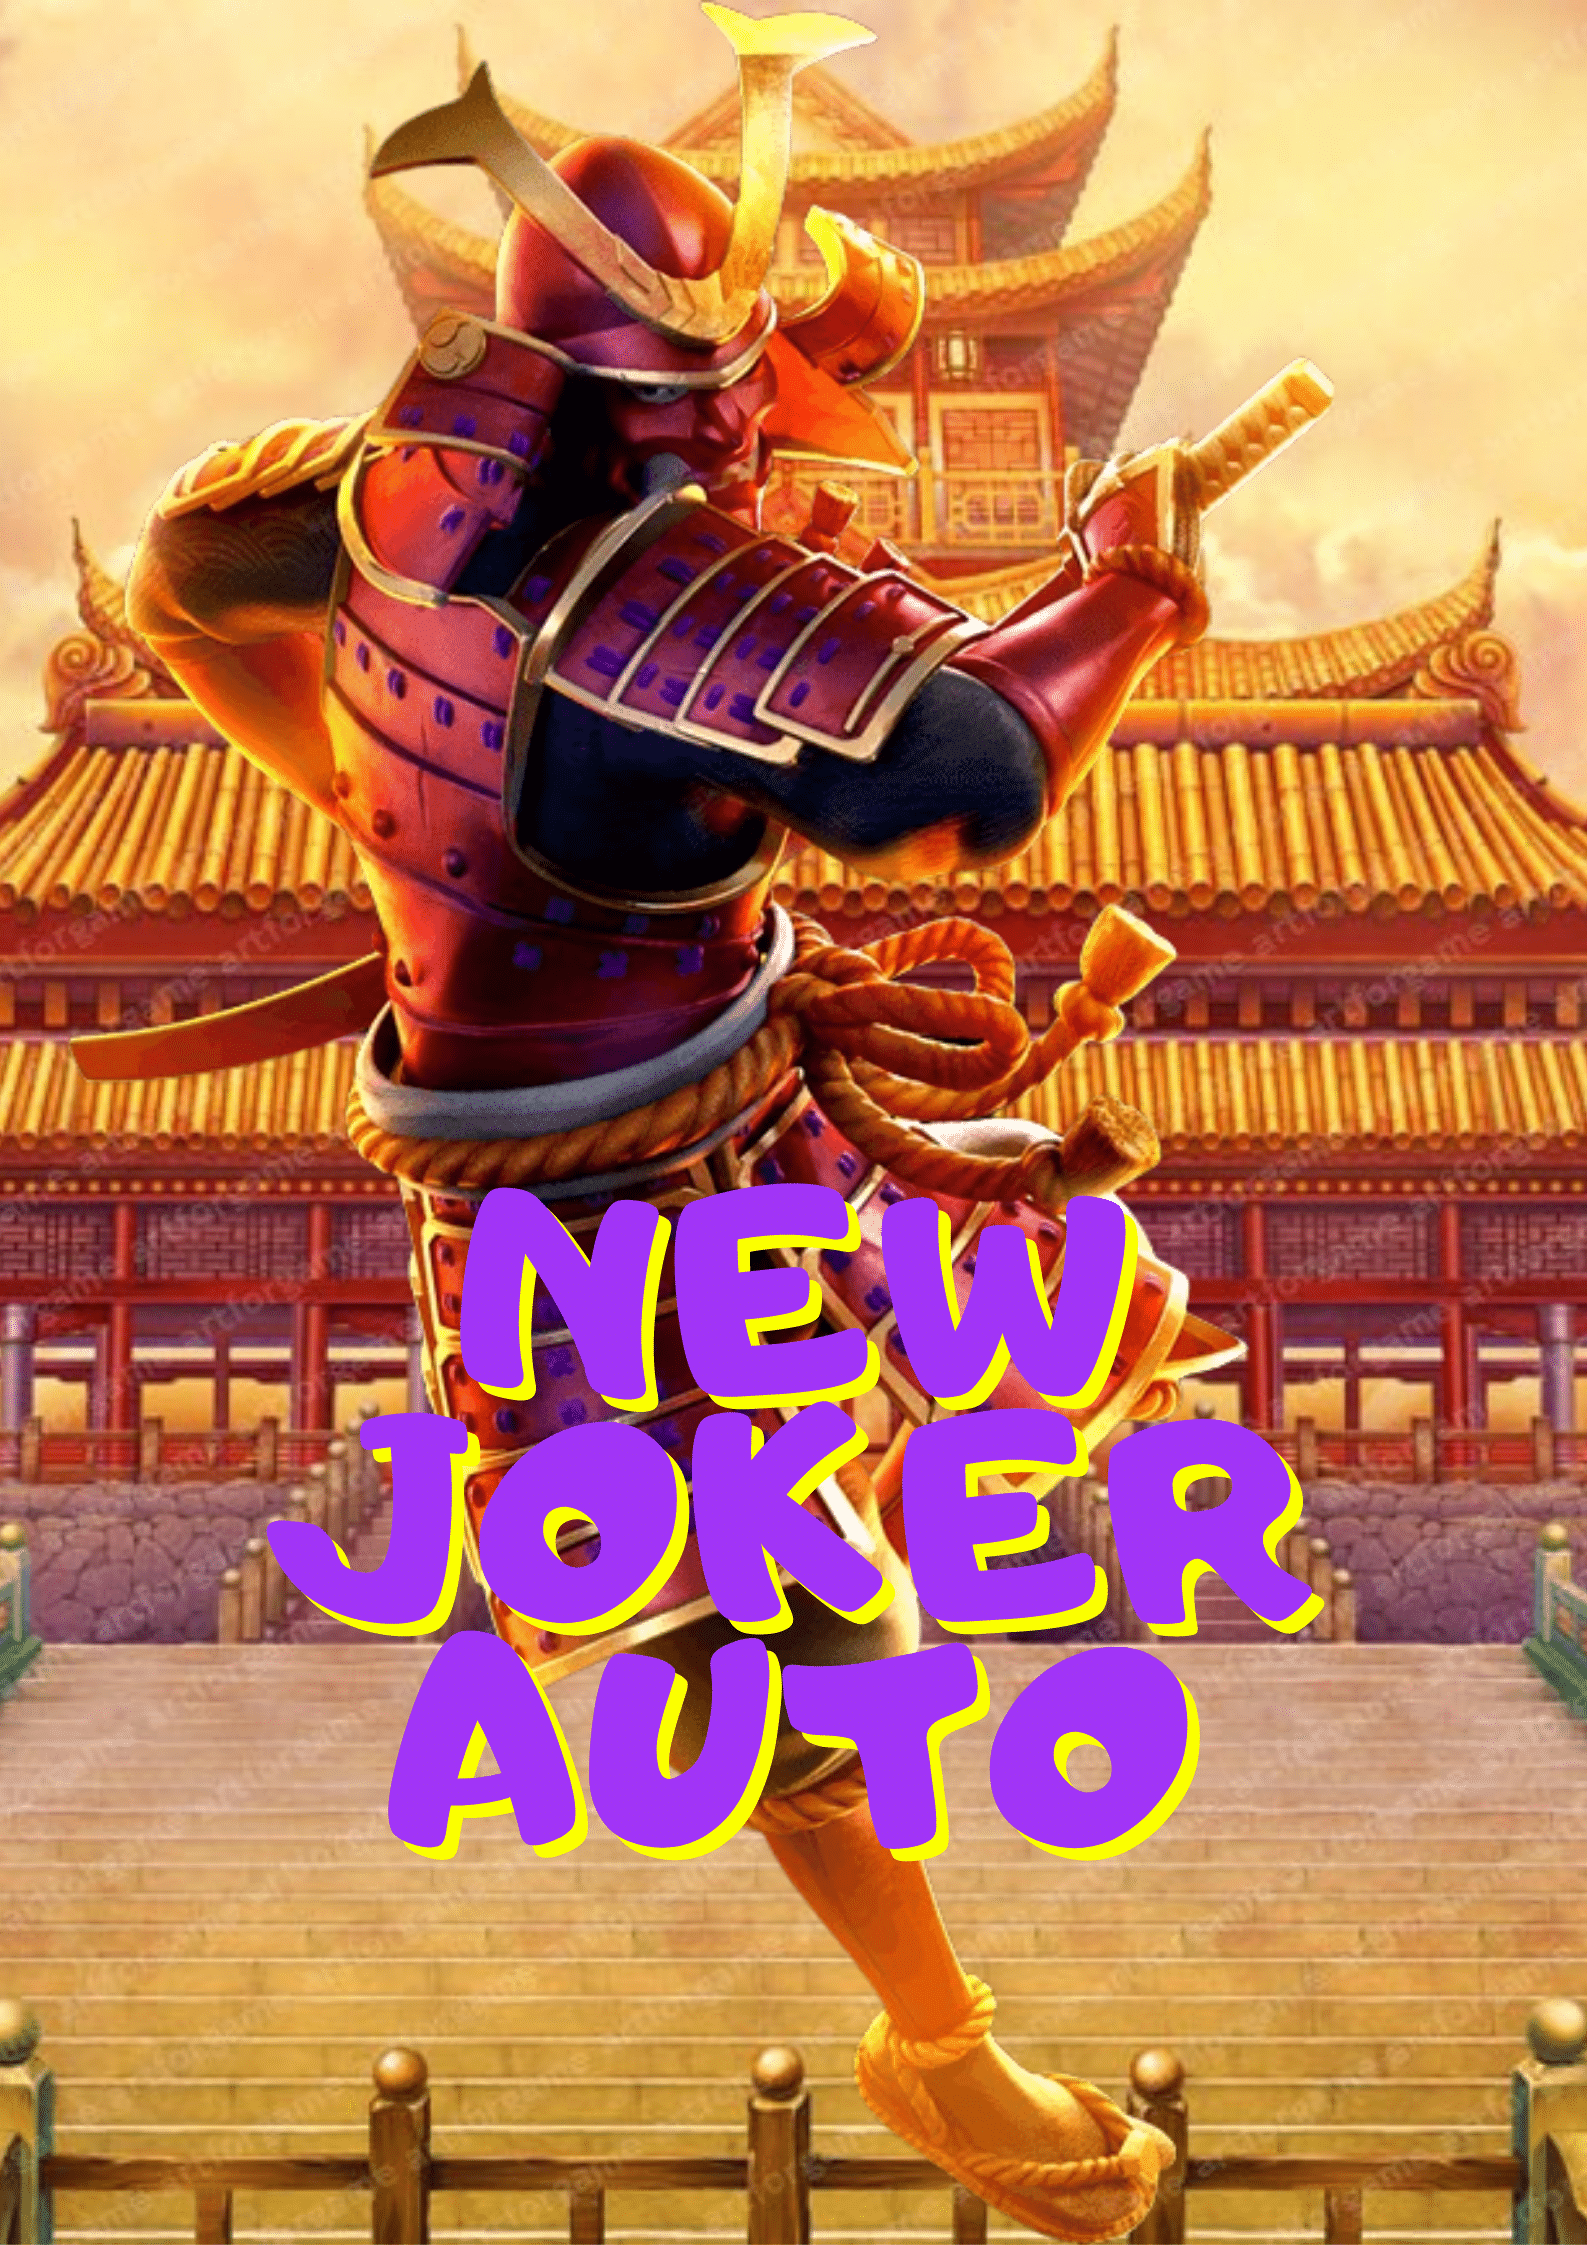 New-joker-auto-logo